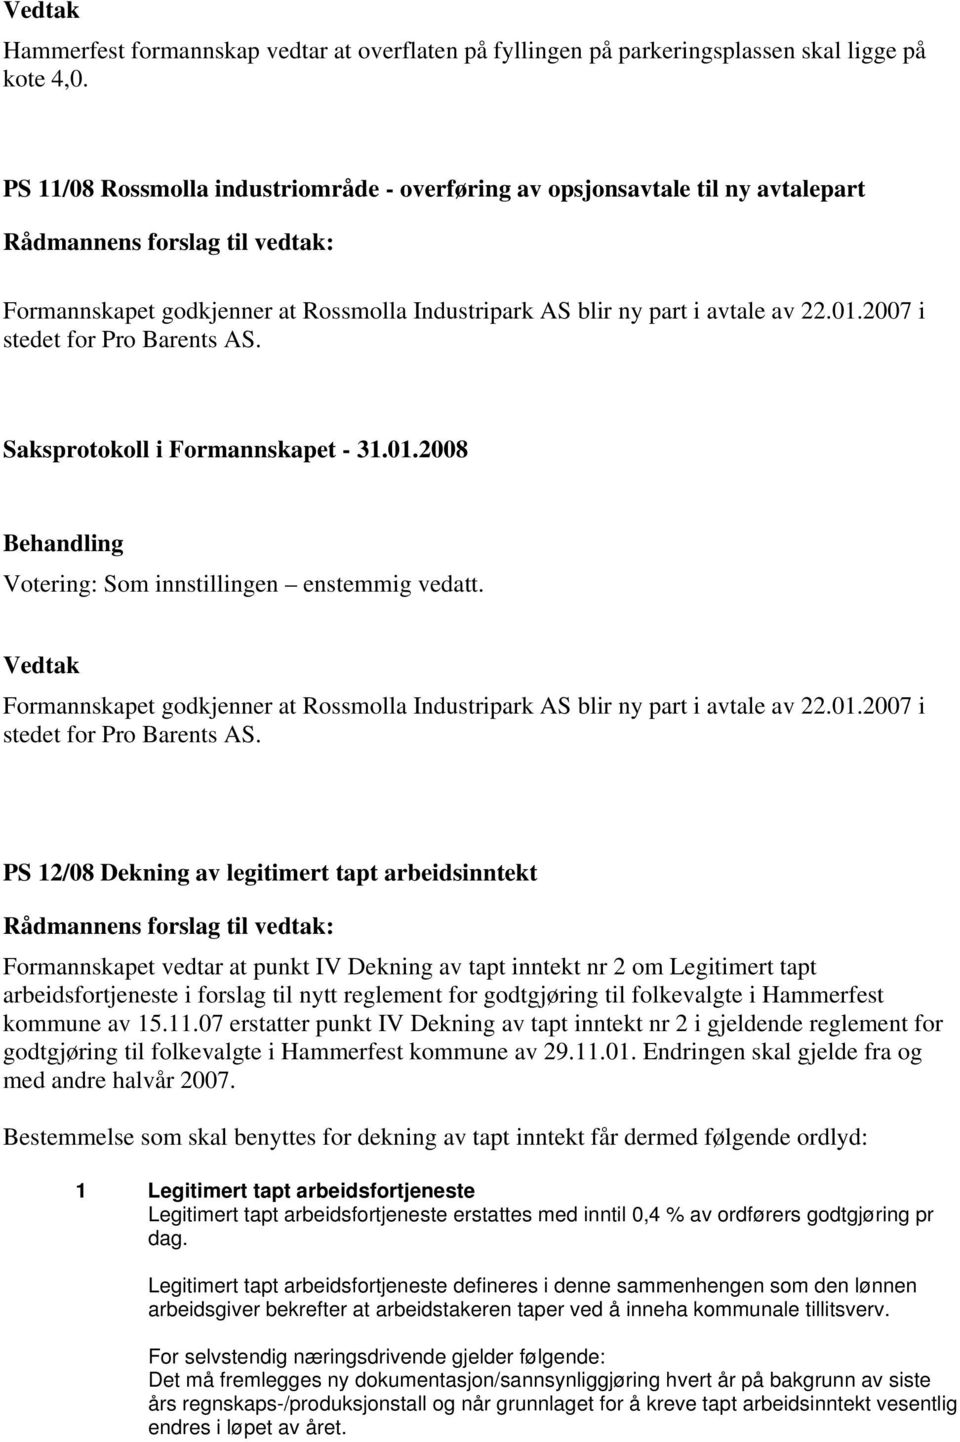 Votering: Som innstillingen enstemmig vedatt. Formannskapet godkjenner at Rossmolla Industripark AS blir ny part i avtale av 22.01.2007 i stedet for Pro Barents AS.